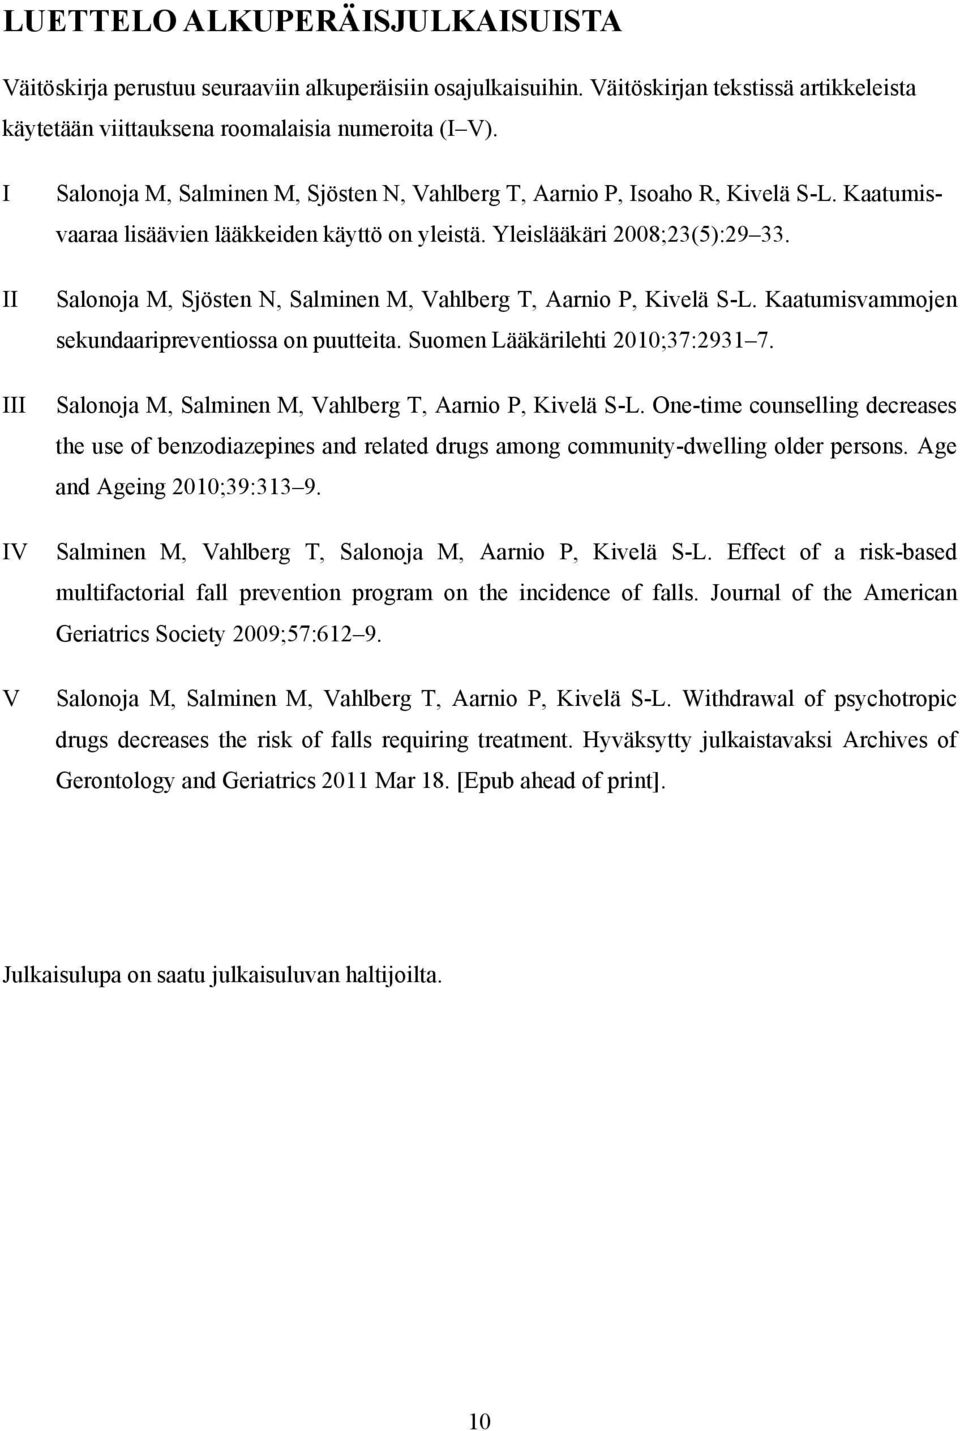 Salonoja M, Sjösten N, Salminen M, Vahlberg T, Aarnio P, Kivelä S-L. Kaatumisvammojen sekundaaripreventiossa on puutteita. Suomen Lääkärilehti 2010;37:2931 7.